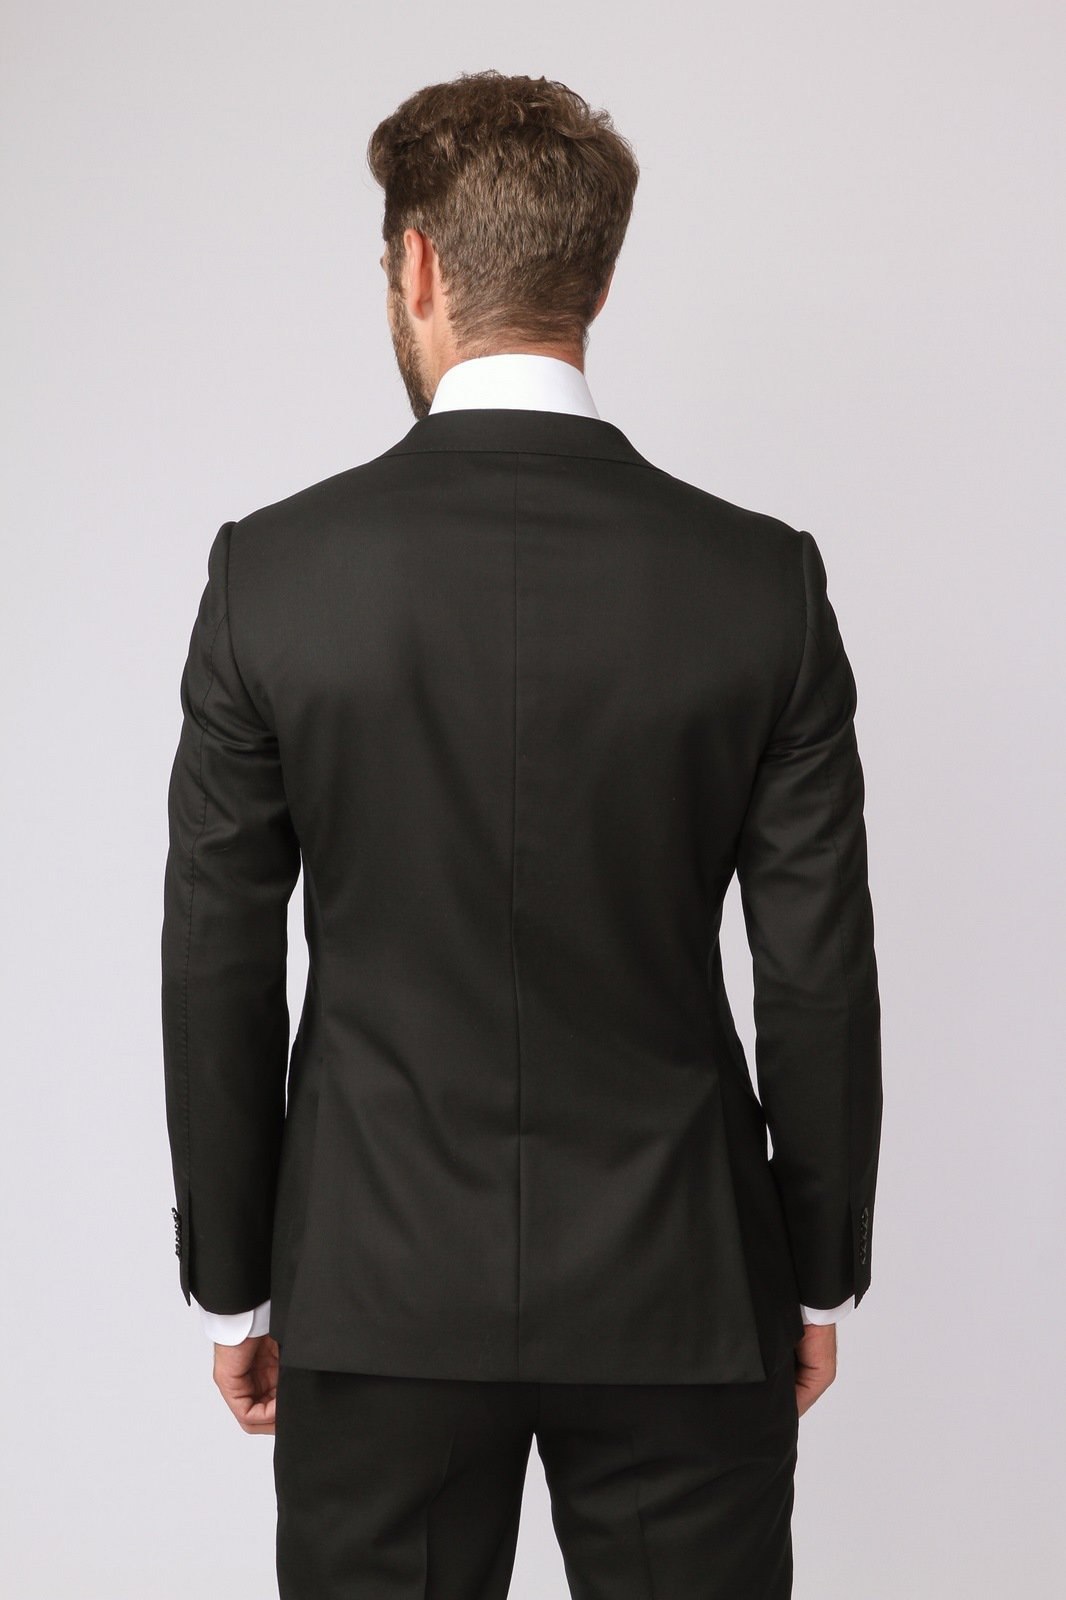 Ковид костюм. Kanzler костюм черный 50. Мужчина в костюме со спины. Пиджак со спины. Мужчина в пиджаке со спины.